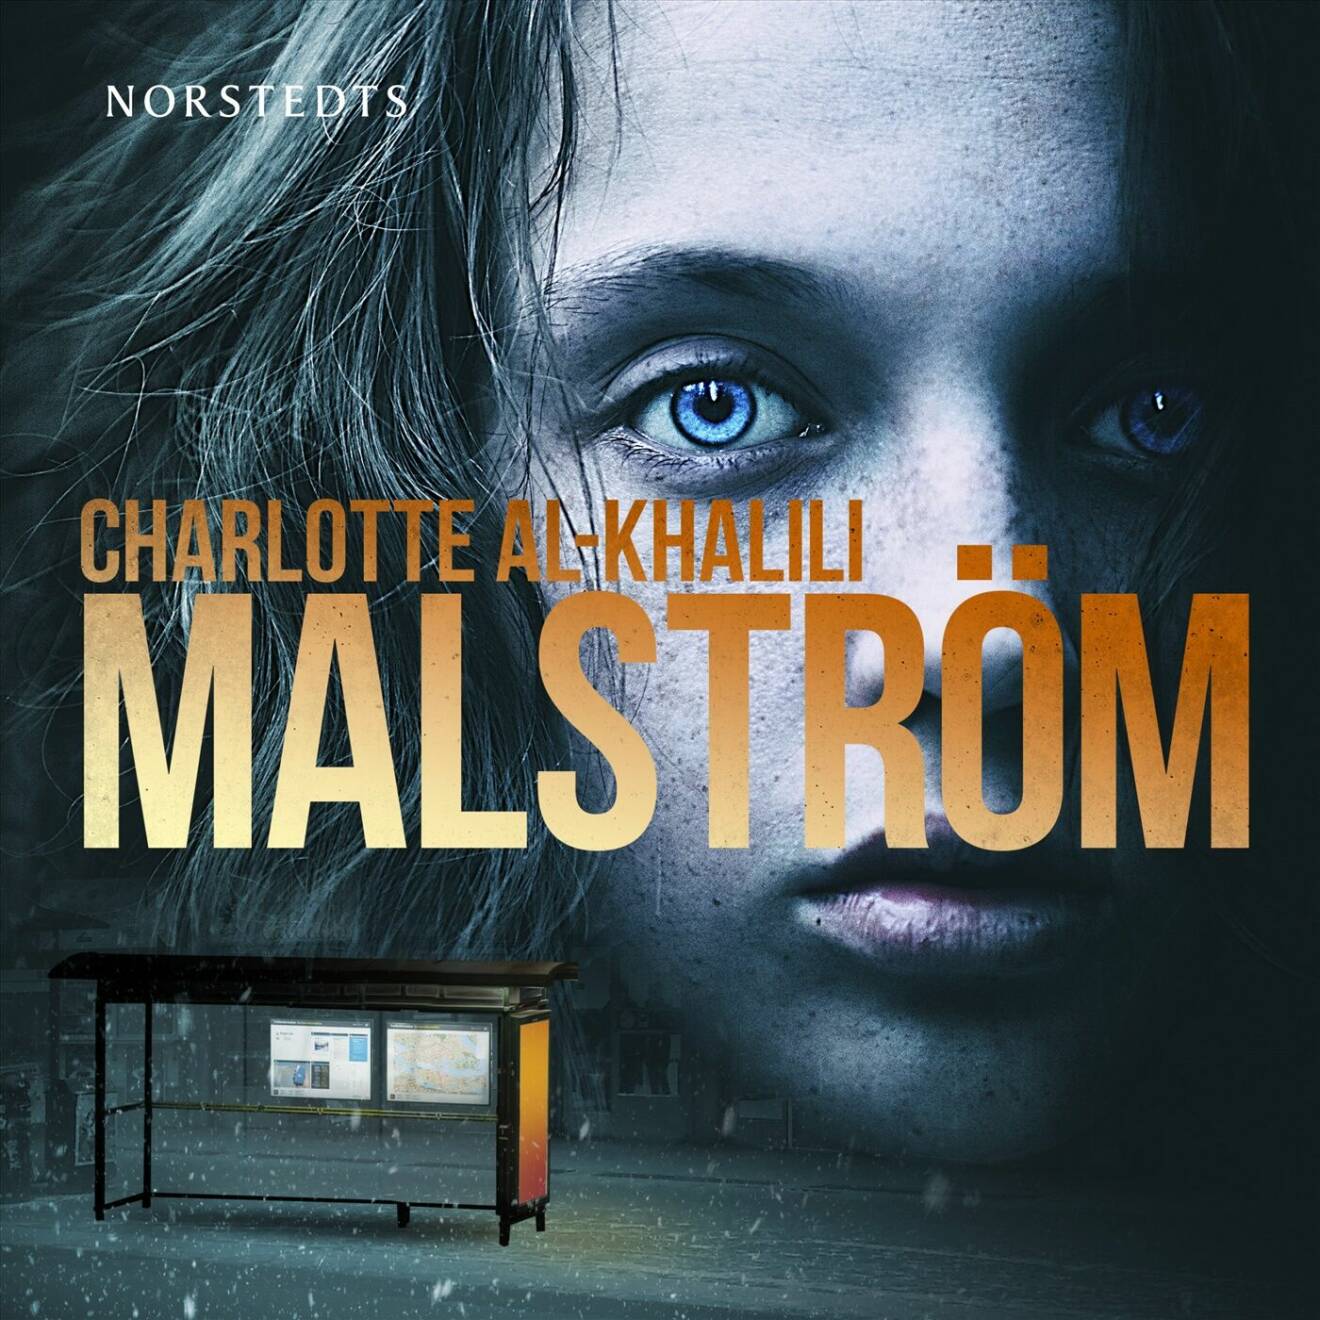 Bokomslag, Charlotte Al-Khalilis spänningsroman Malström.